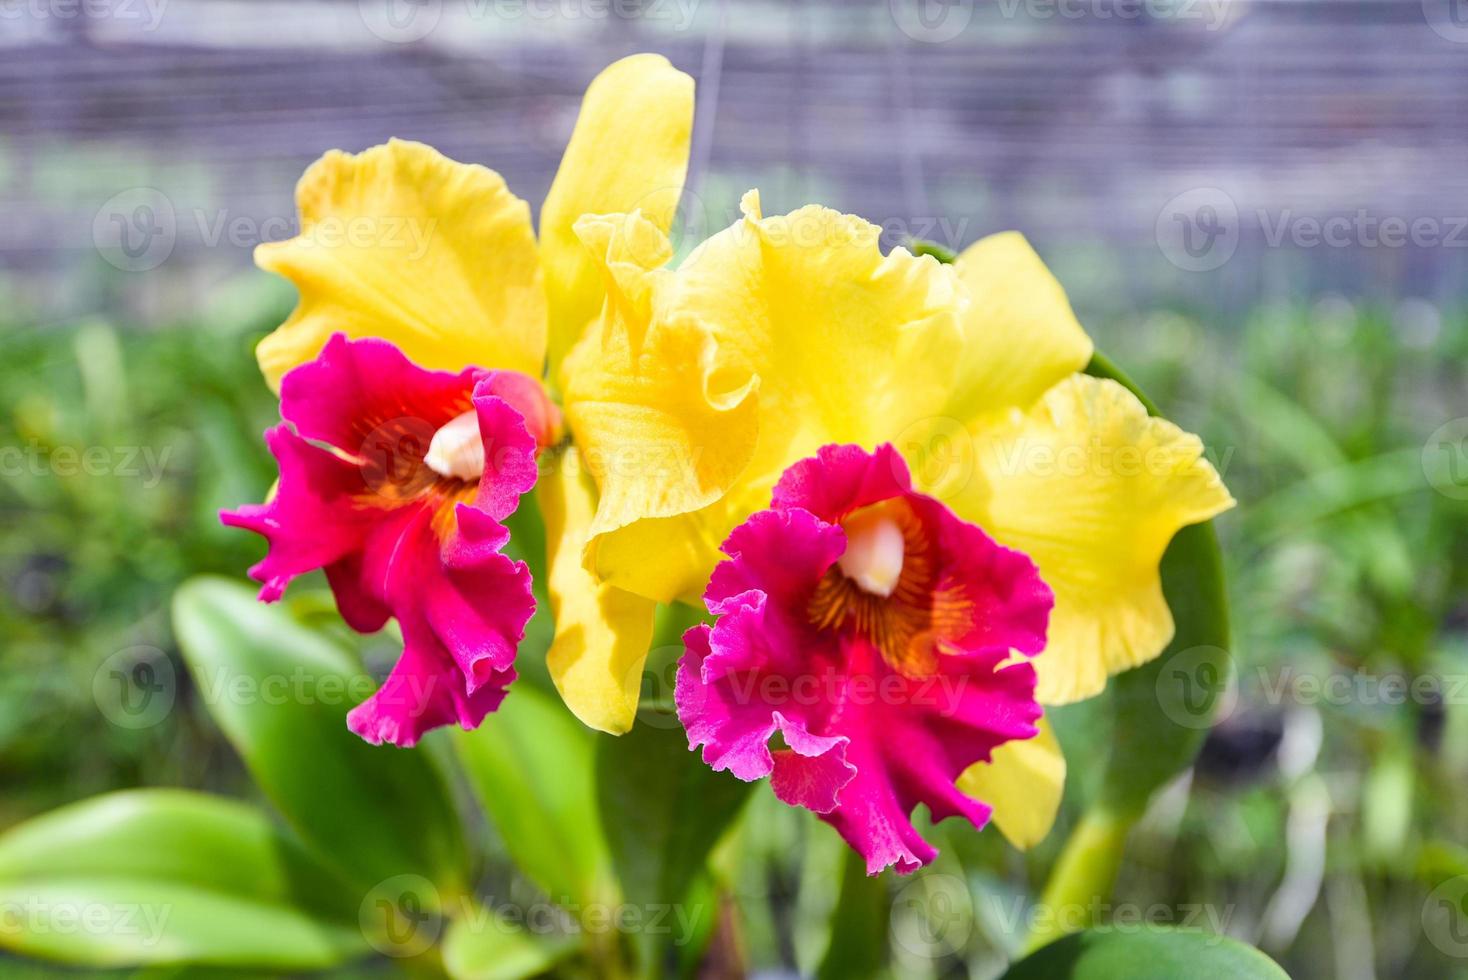 orquídeas cattleya - rosa y amarilla hermosa flor de orquídea colorida en la planta de vivero de la granja de la naturaleza foto